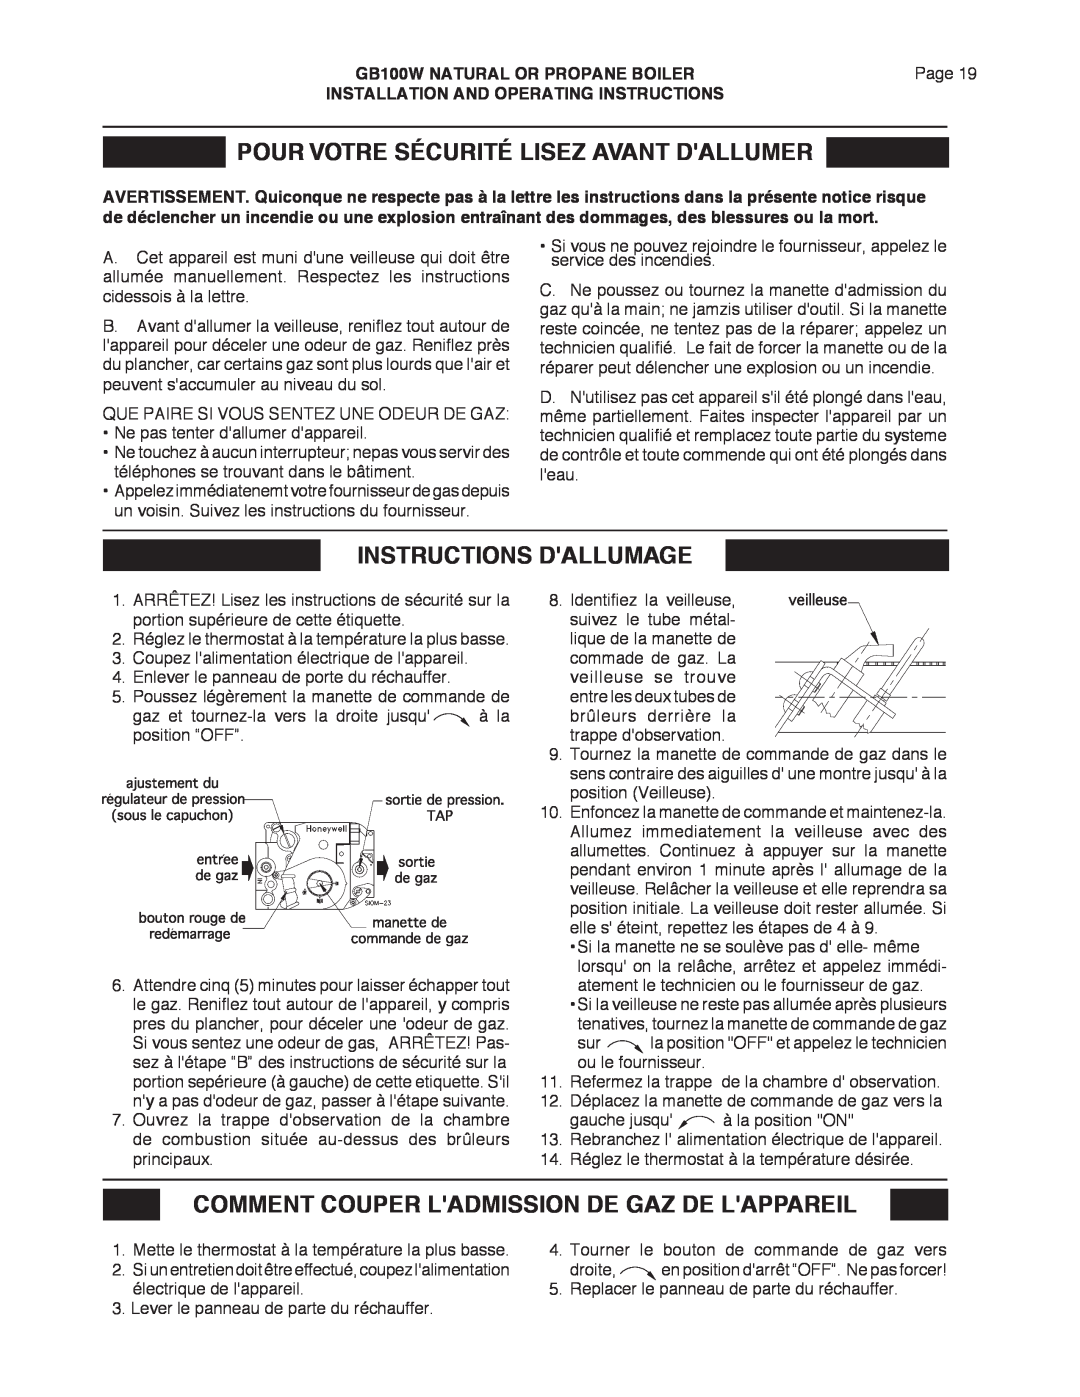 Smith Cast Iron Boilers GB100W manual Pour Votre Sécurité Lisez Avant Dallumer, Instructions Dallumage 